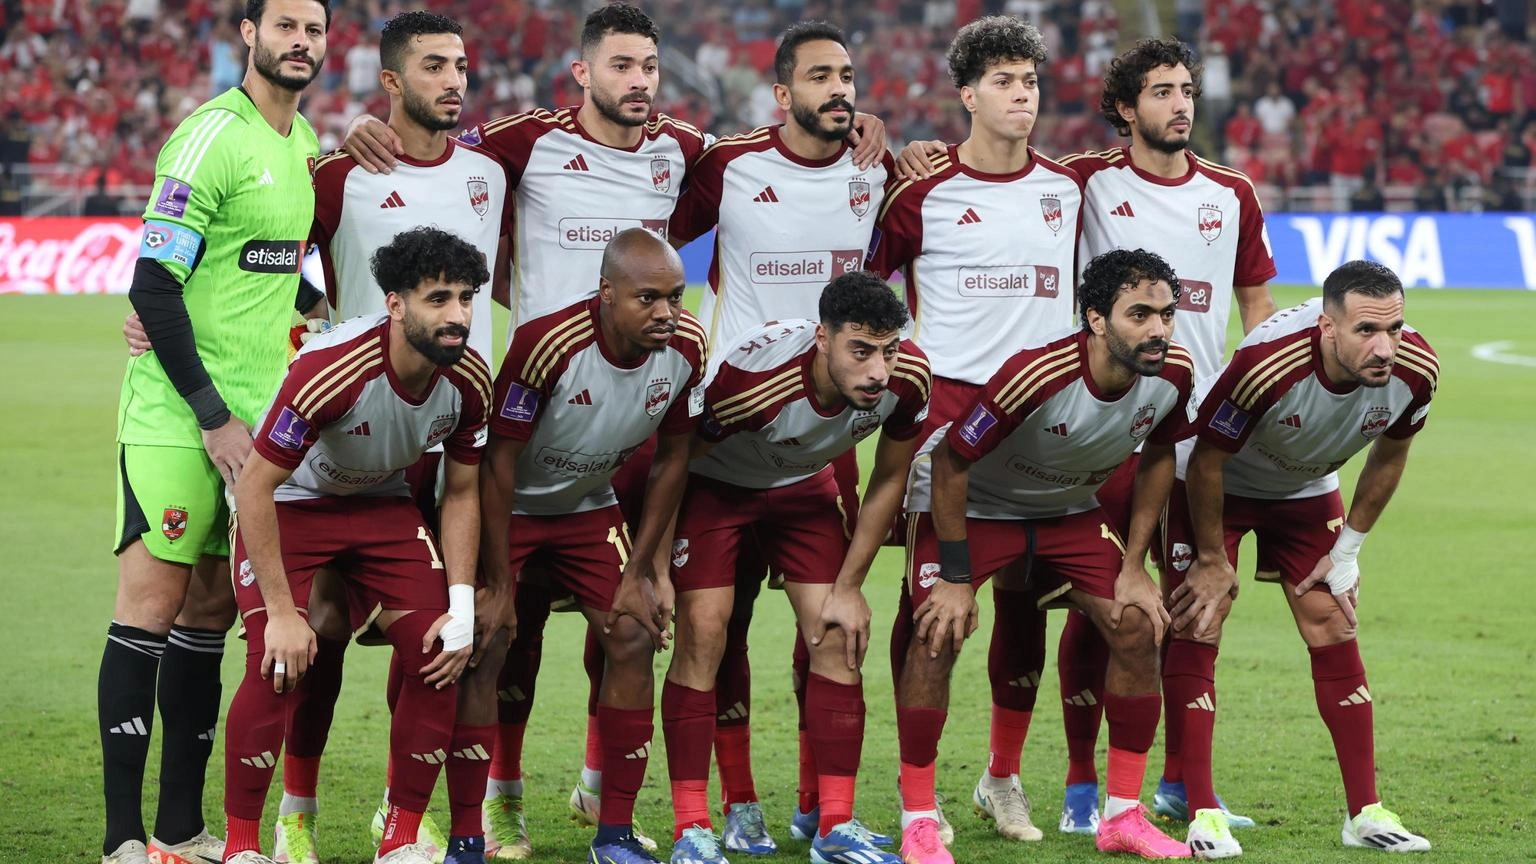 Mondiale club: l'Al Ahly batte 4-2 l'Urawa e chiude terzo